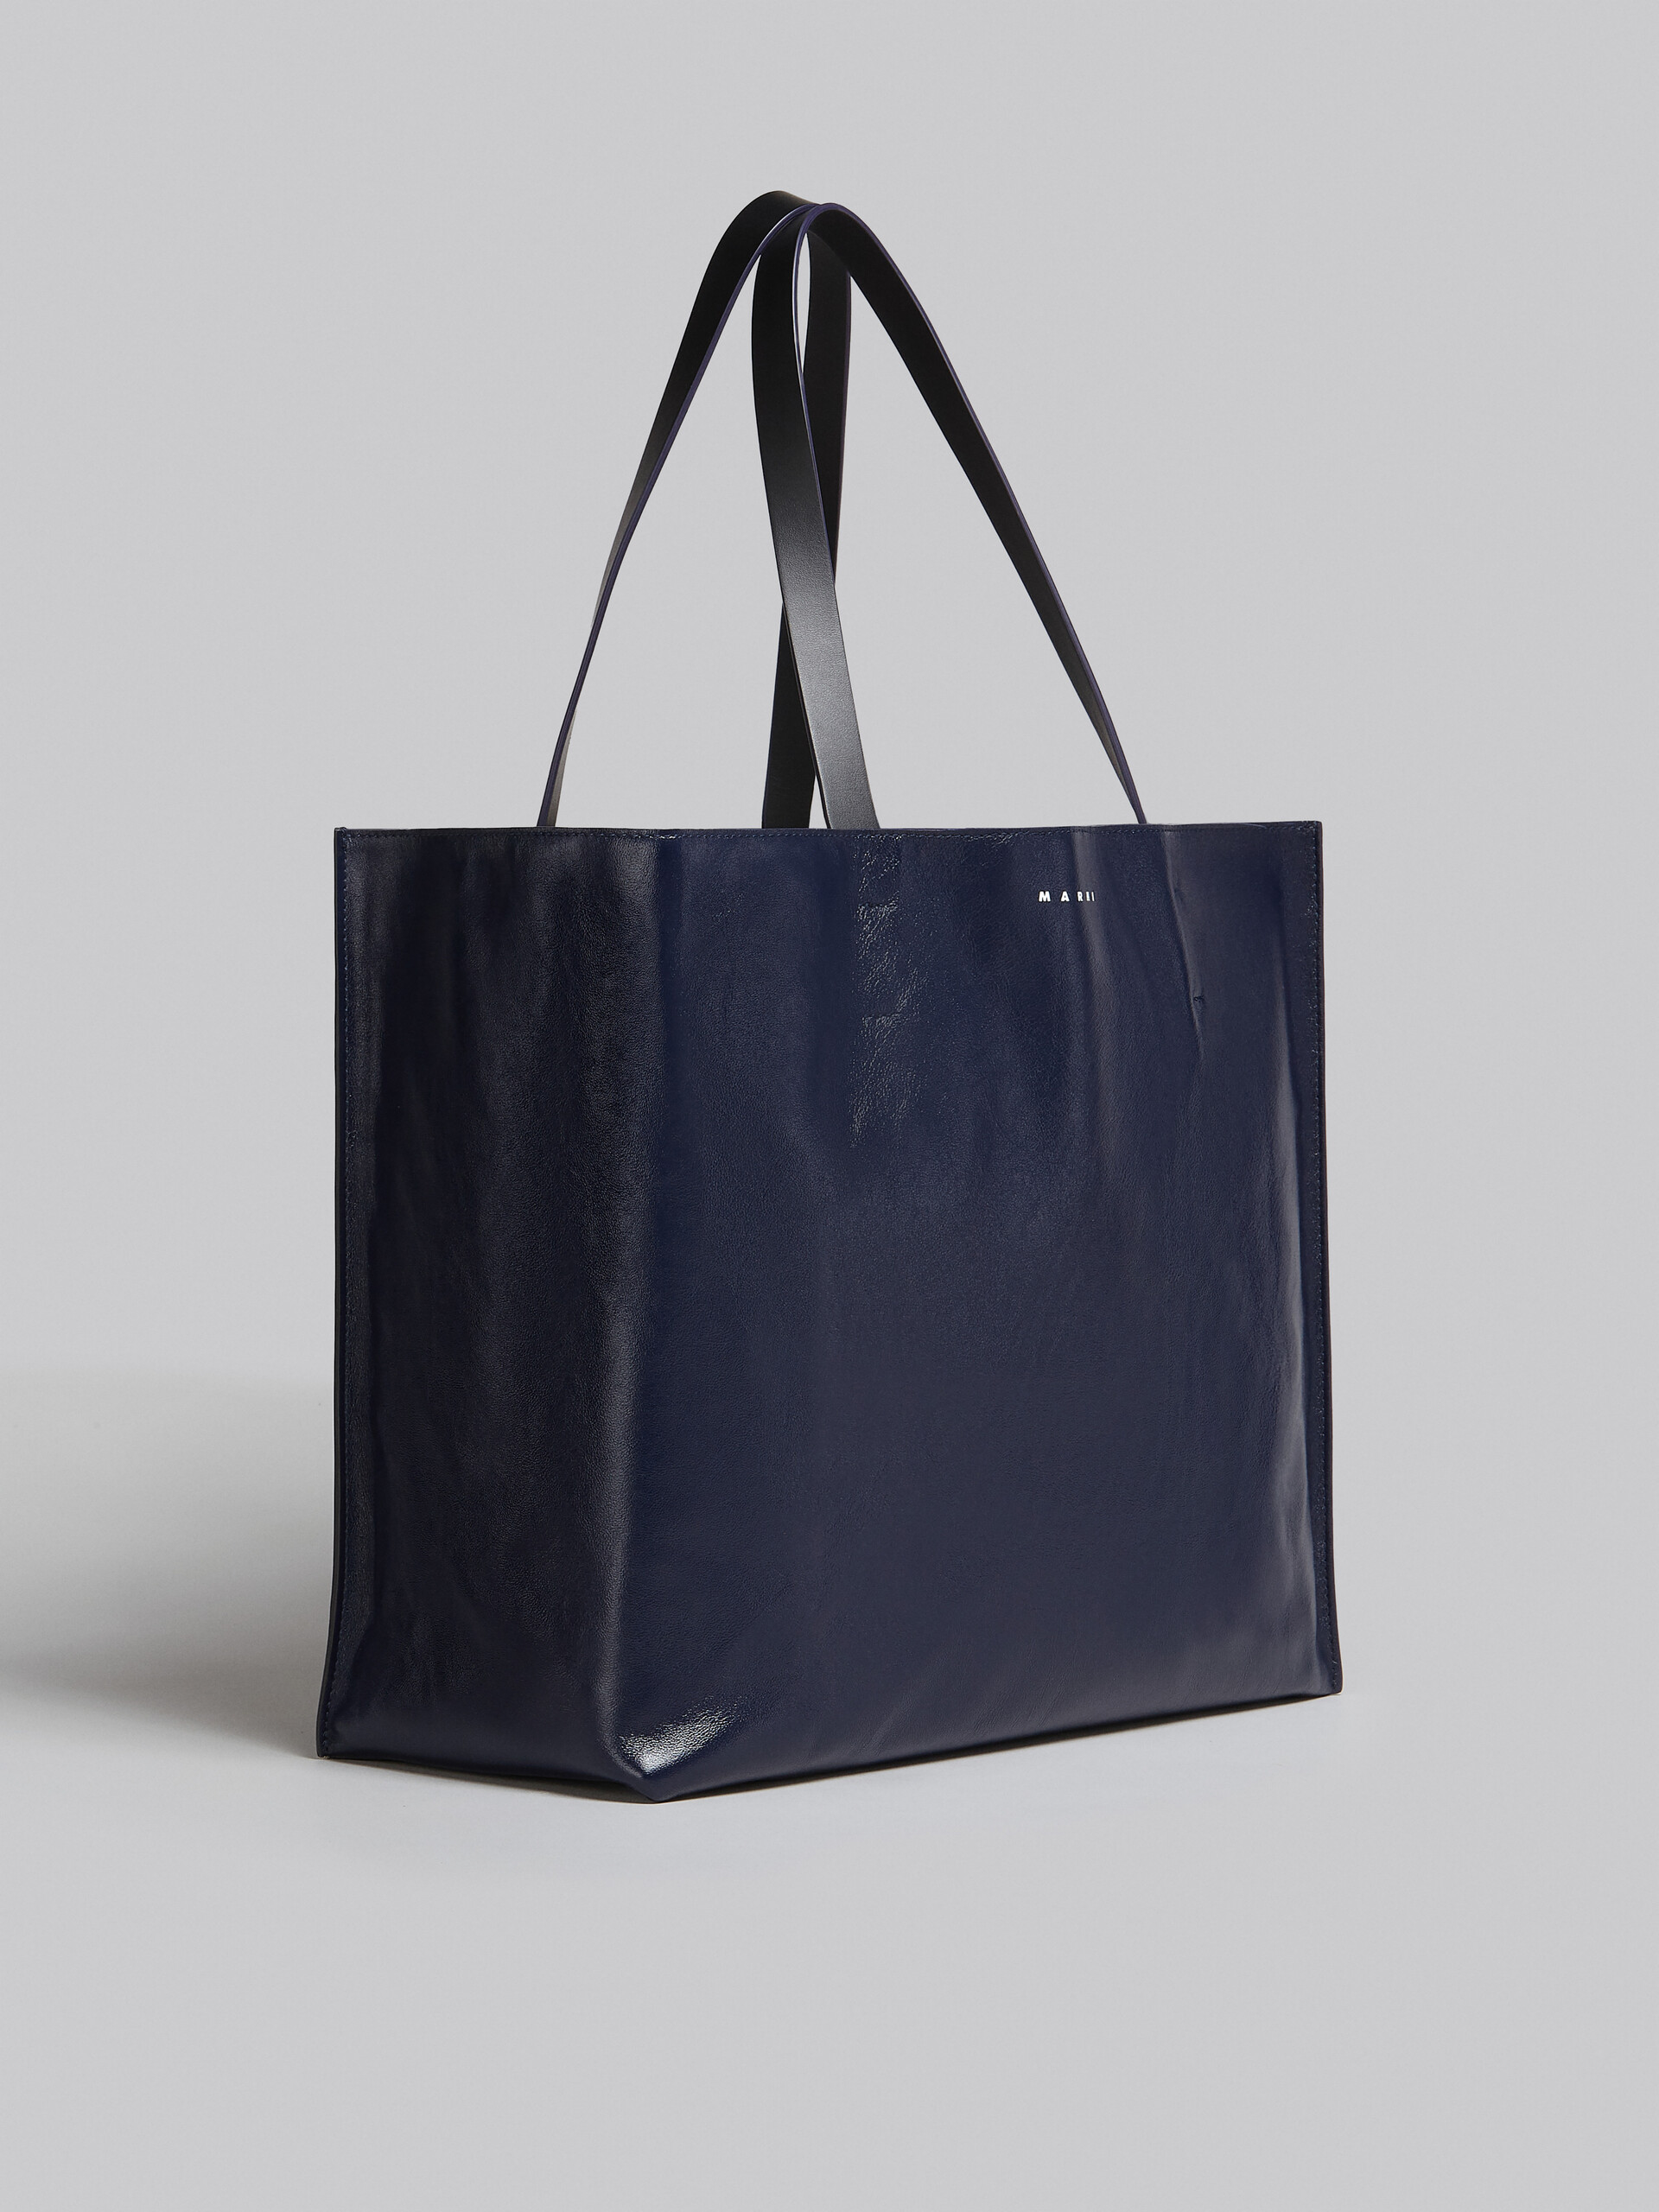 Tasche Museo Soft aus Leder in Blau und Schwarz - Shopper - Image 6